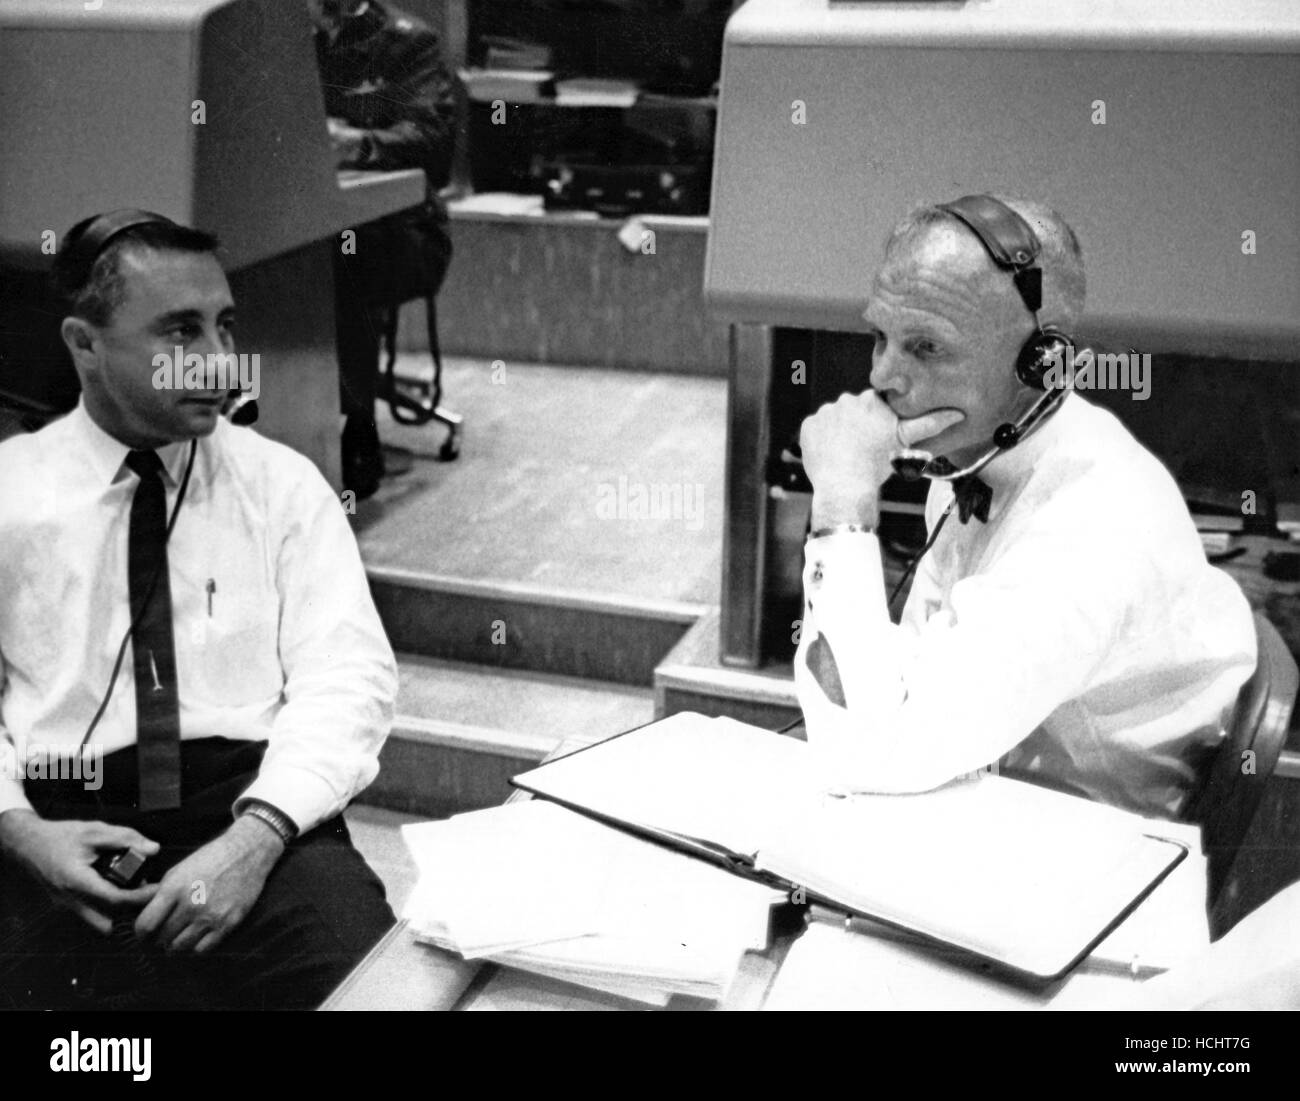 Veteran USA Spacemen erwarten Wort vom Projekt Mercury Astronaut M. Scott Carpenter kehrt er zurück zur Erde 3 Ausflüge rund um den Globus in Cape Canaveral, Florida, 24. Mai 1962. Links; I. Virgil "Gus" Grissom, Pilot des Merkurs zweite suborbitalen Mission und Recht; John H. Glenn, Jr., erster US-orbital Astronaut. Grisson diente als Capsule Communicator, assistiert von Glenn, während des Fluges des Tischlers. Credit: NASA mittels CNP - kein Draht-SERVICE - Foto: Nasa/konsolidiert News Fotos/NASA über CNP Stockfoto